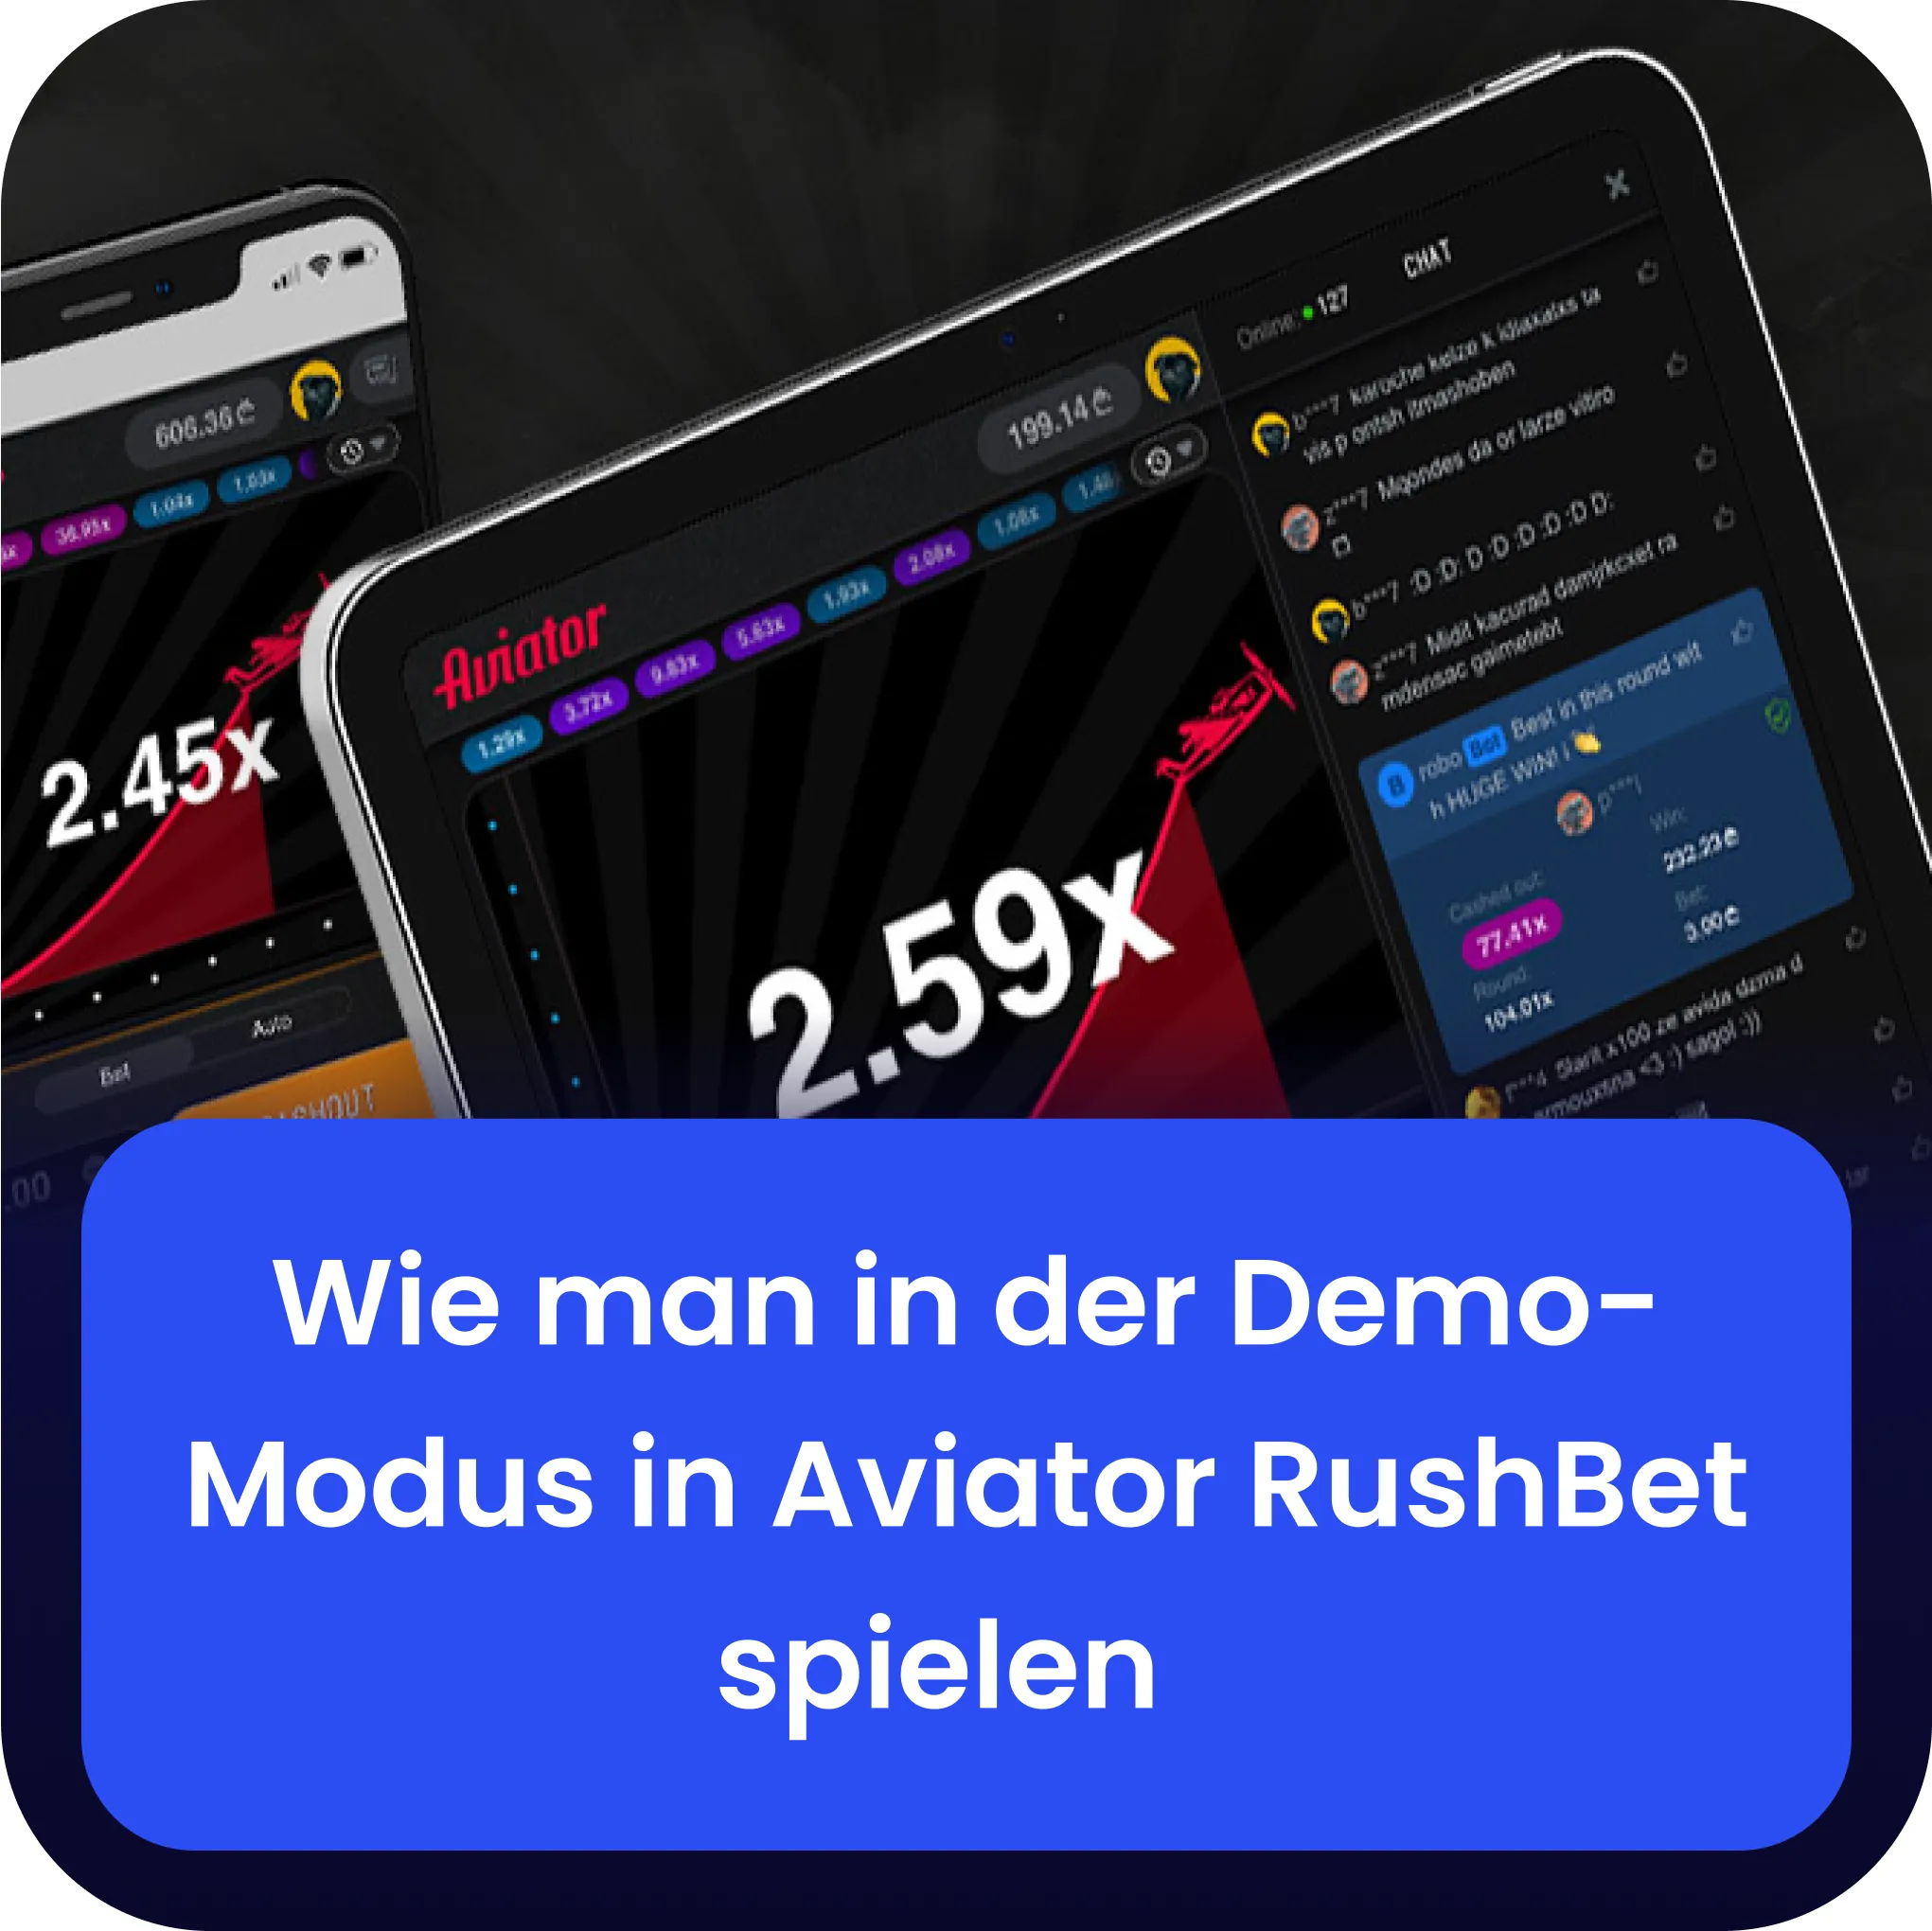 rushbet aviator Demo-Modus